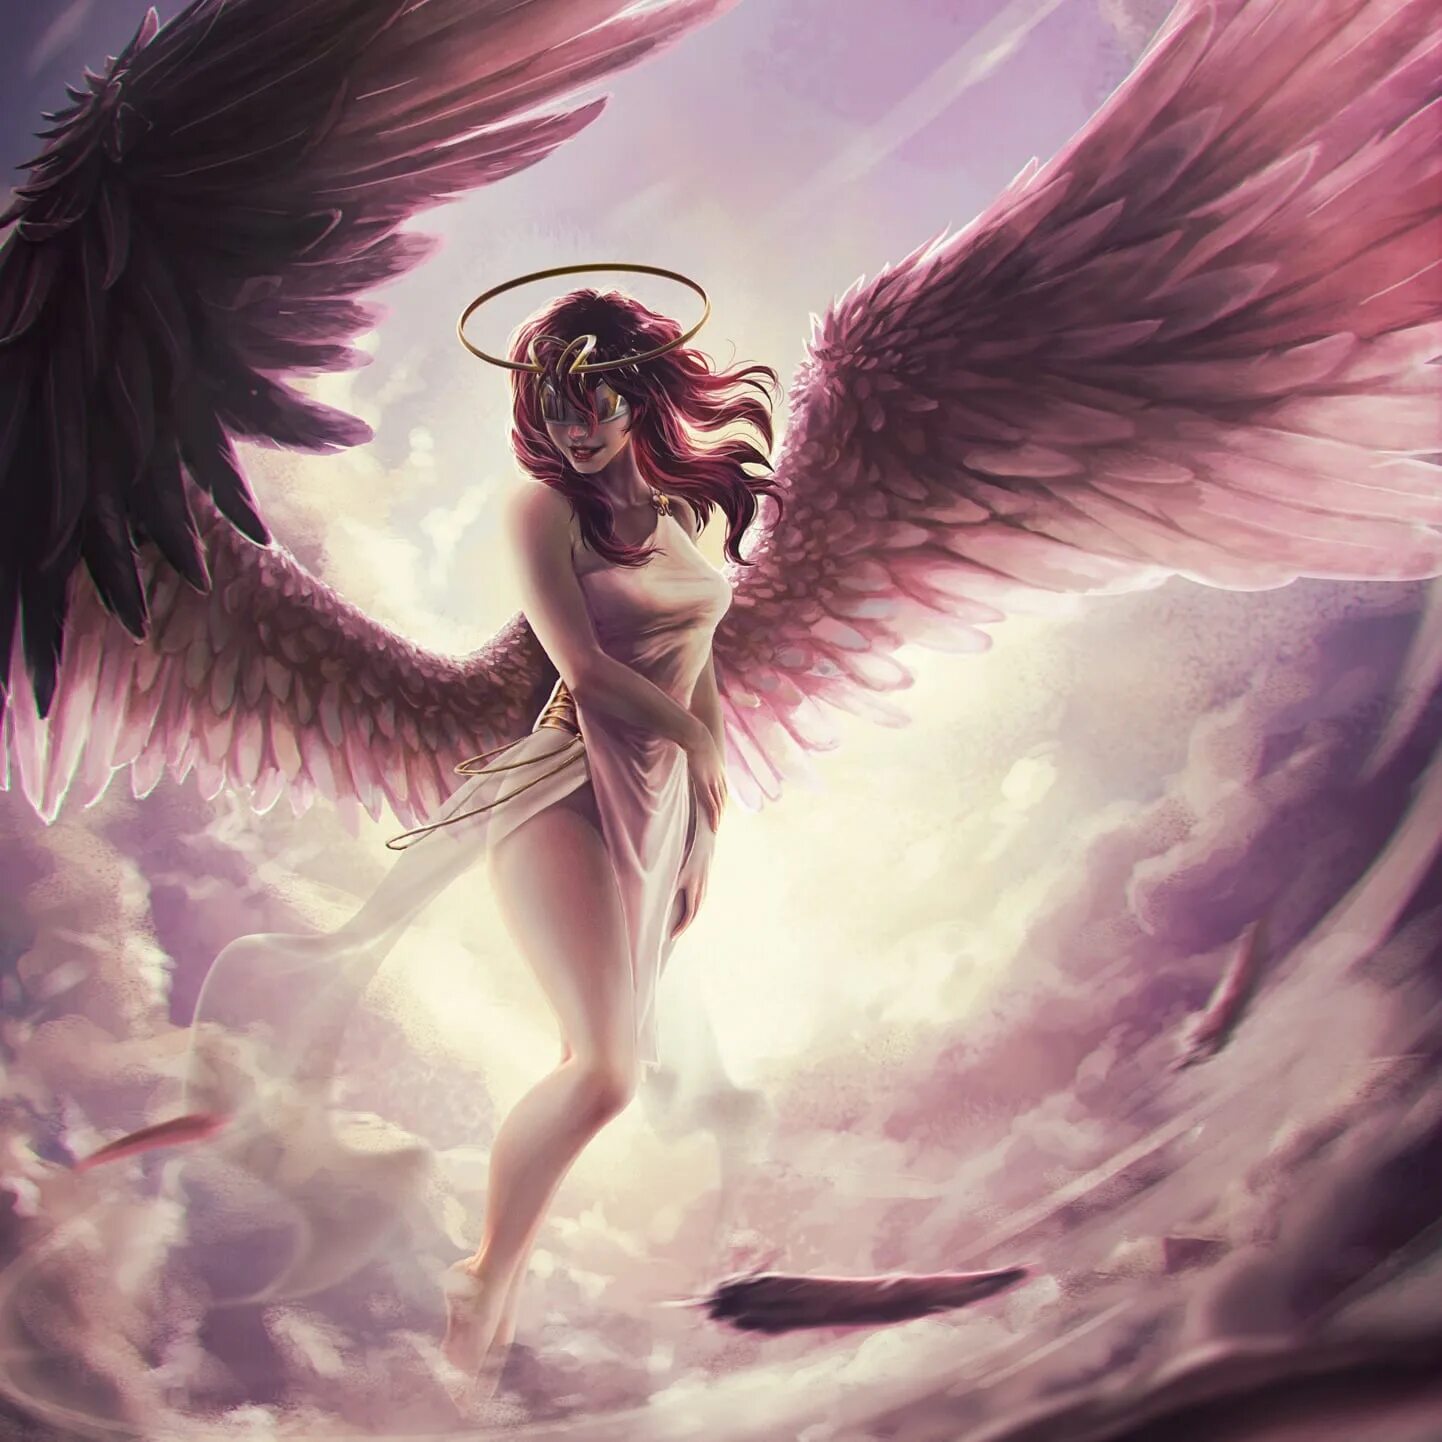 Я становлюсь на крыло сильная. Амалиэль ангел. Анахита ангел. Девушка - ангел. Девушка с крыльями.